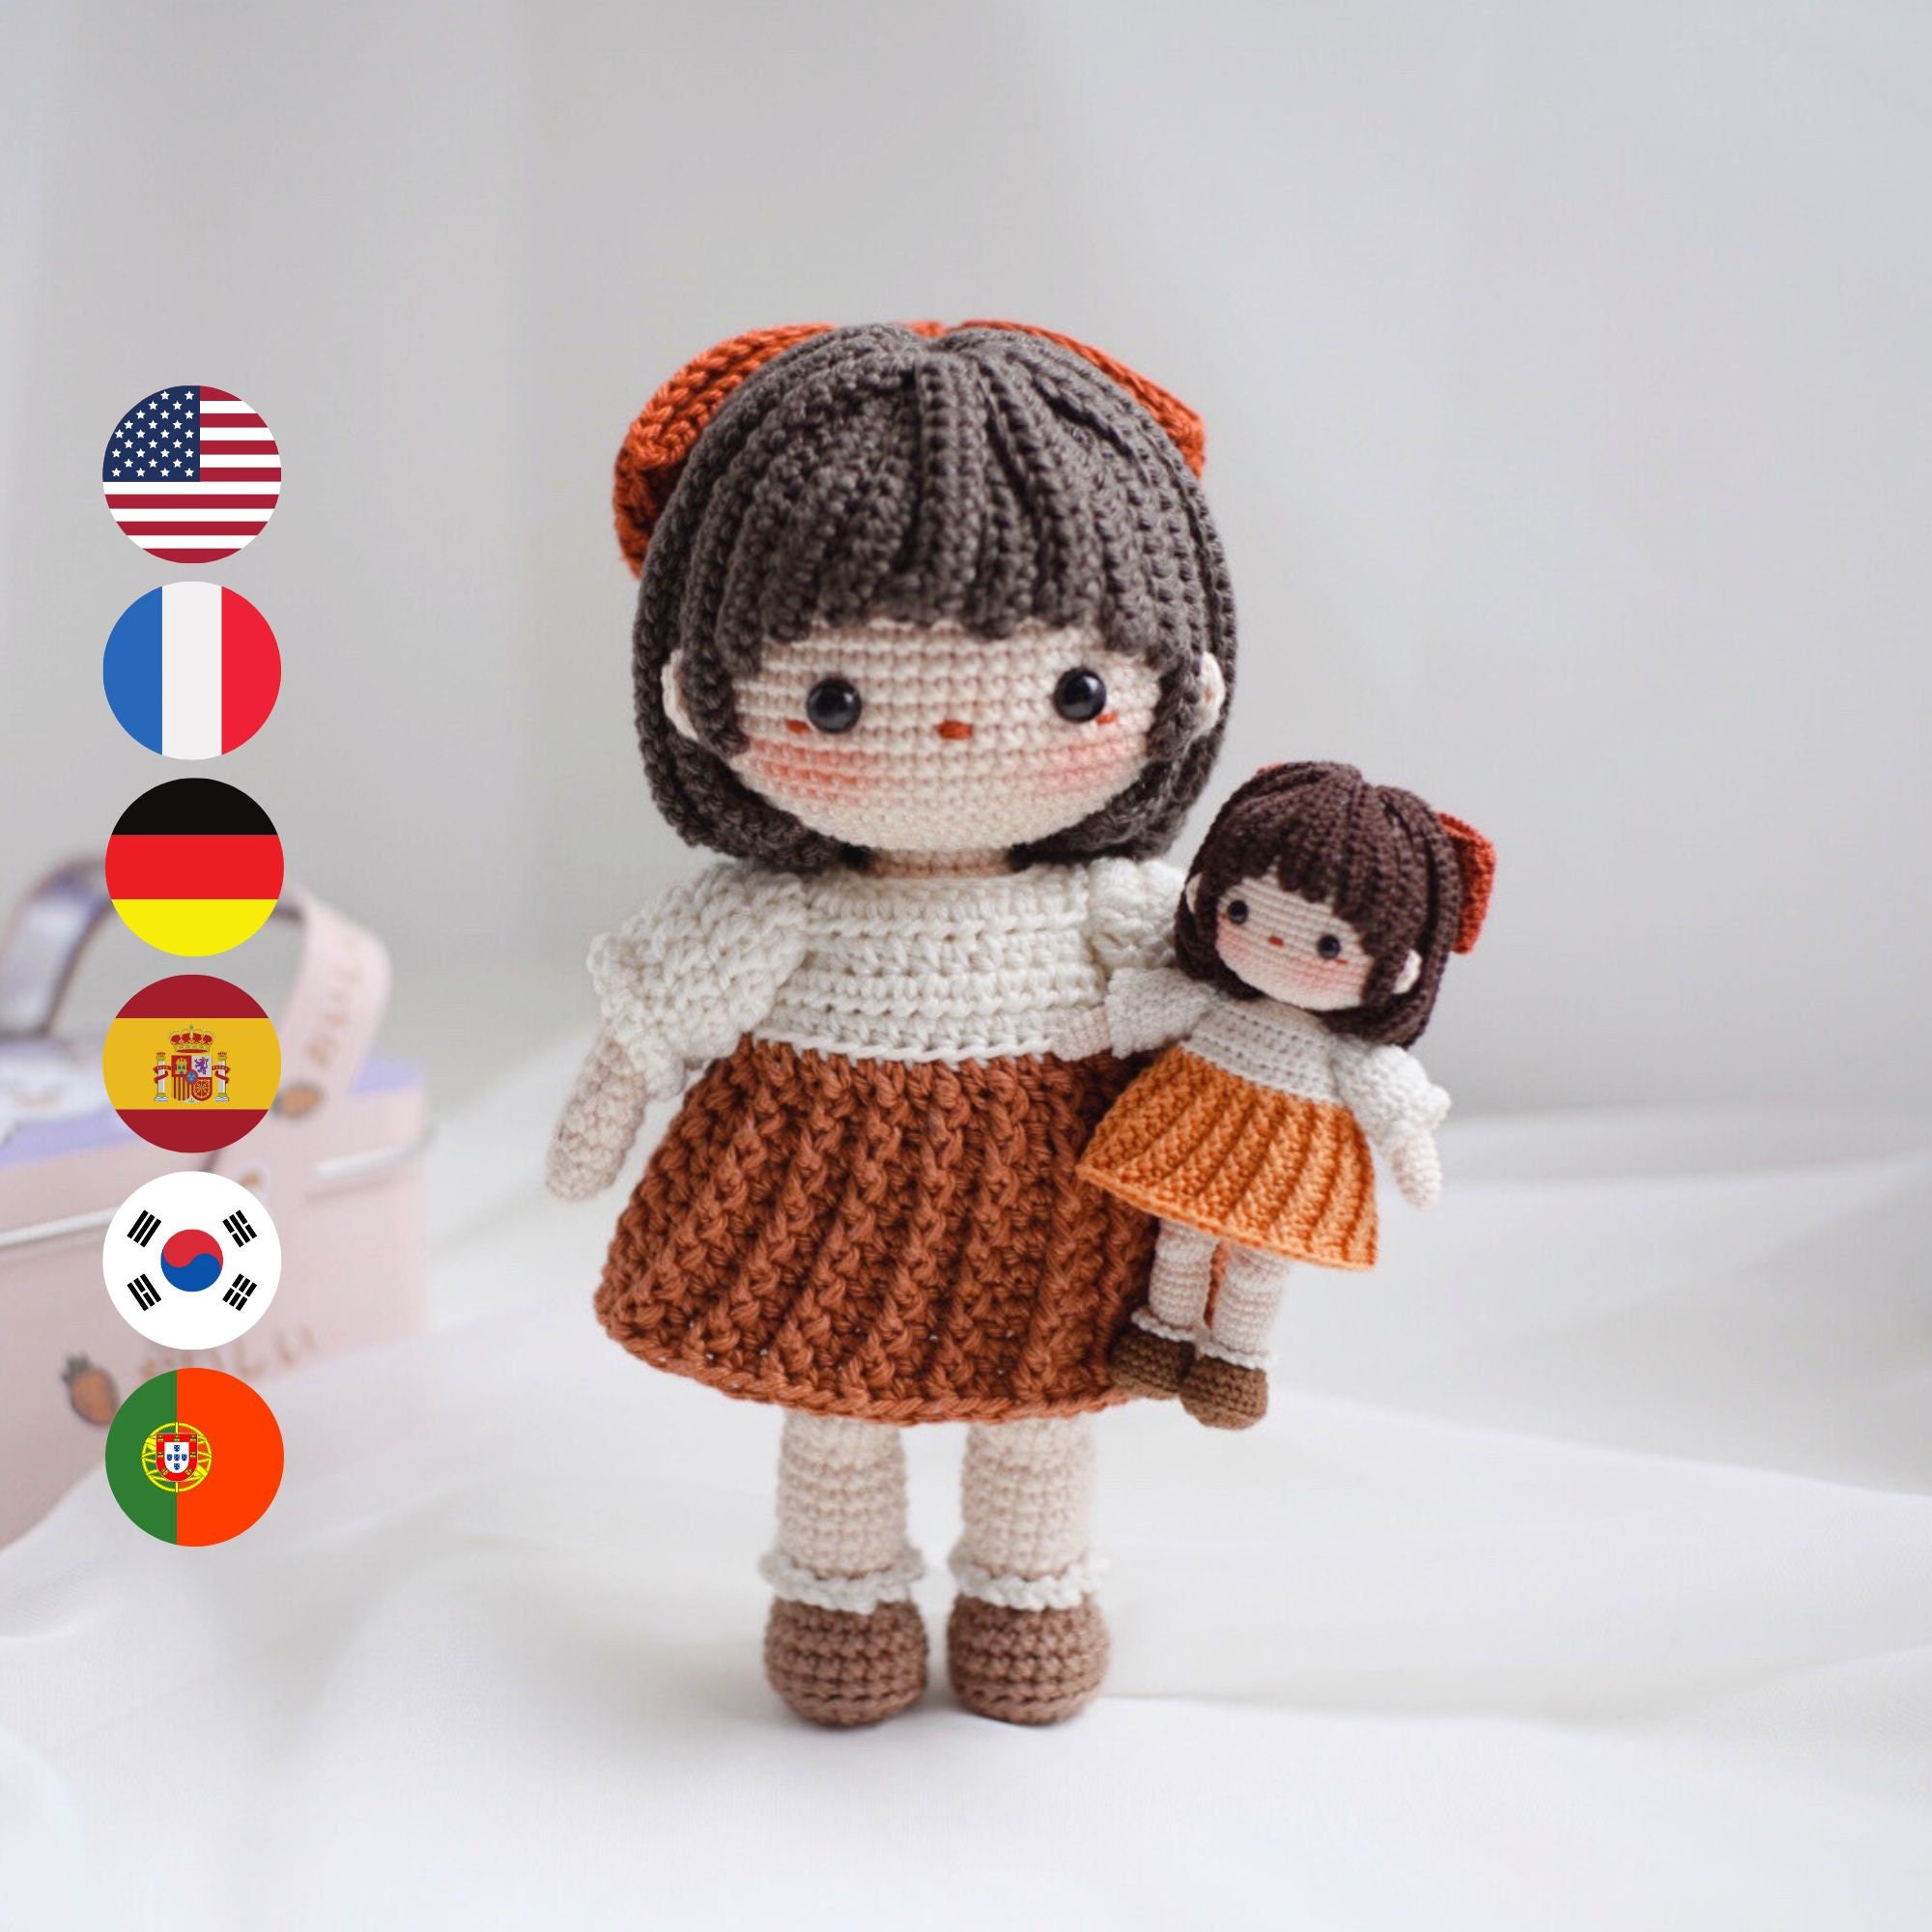 Rosie Amigurumi Doll Pattern